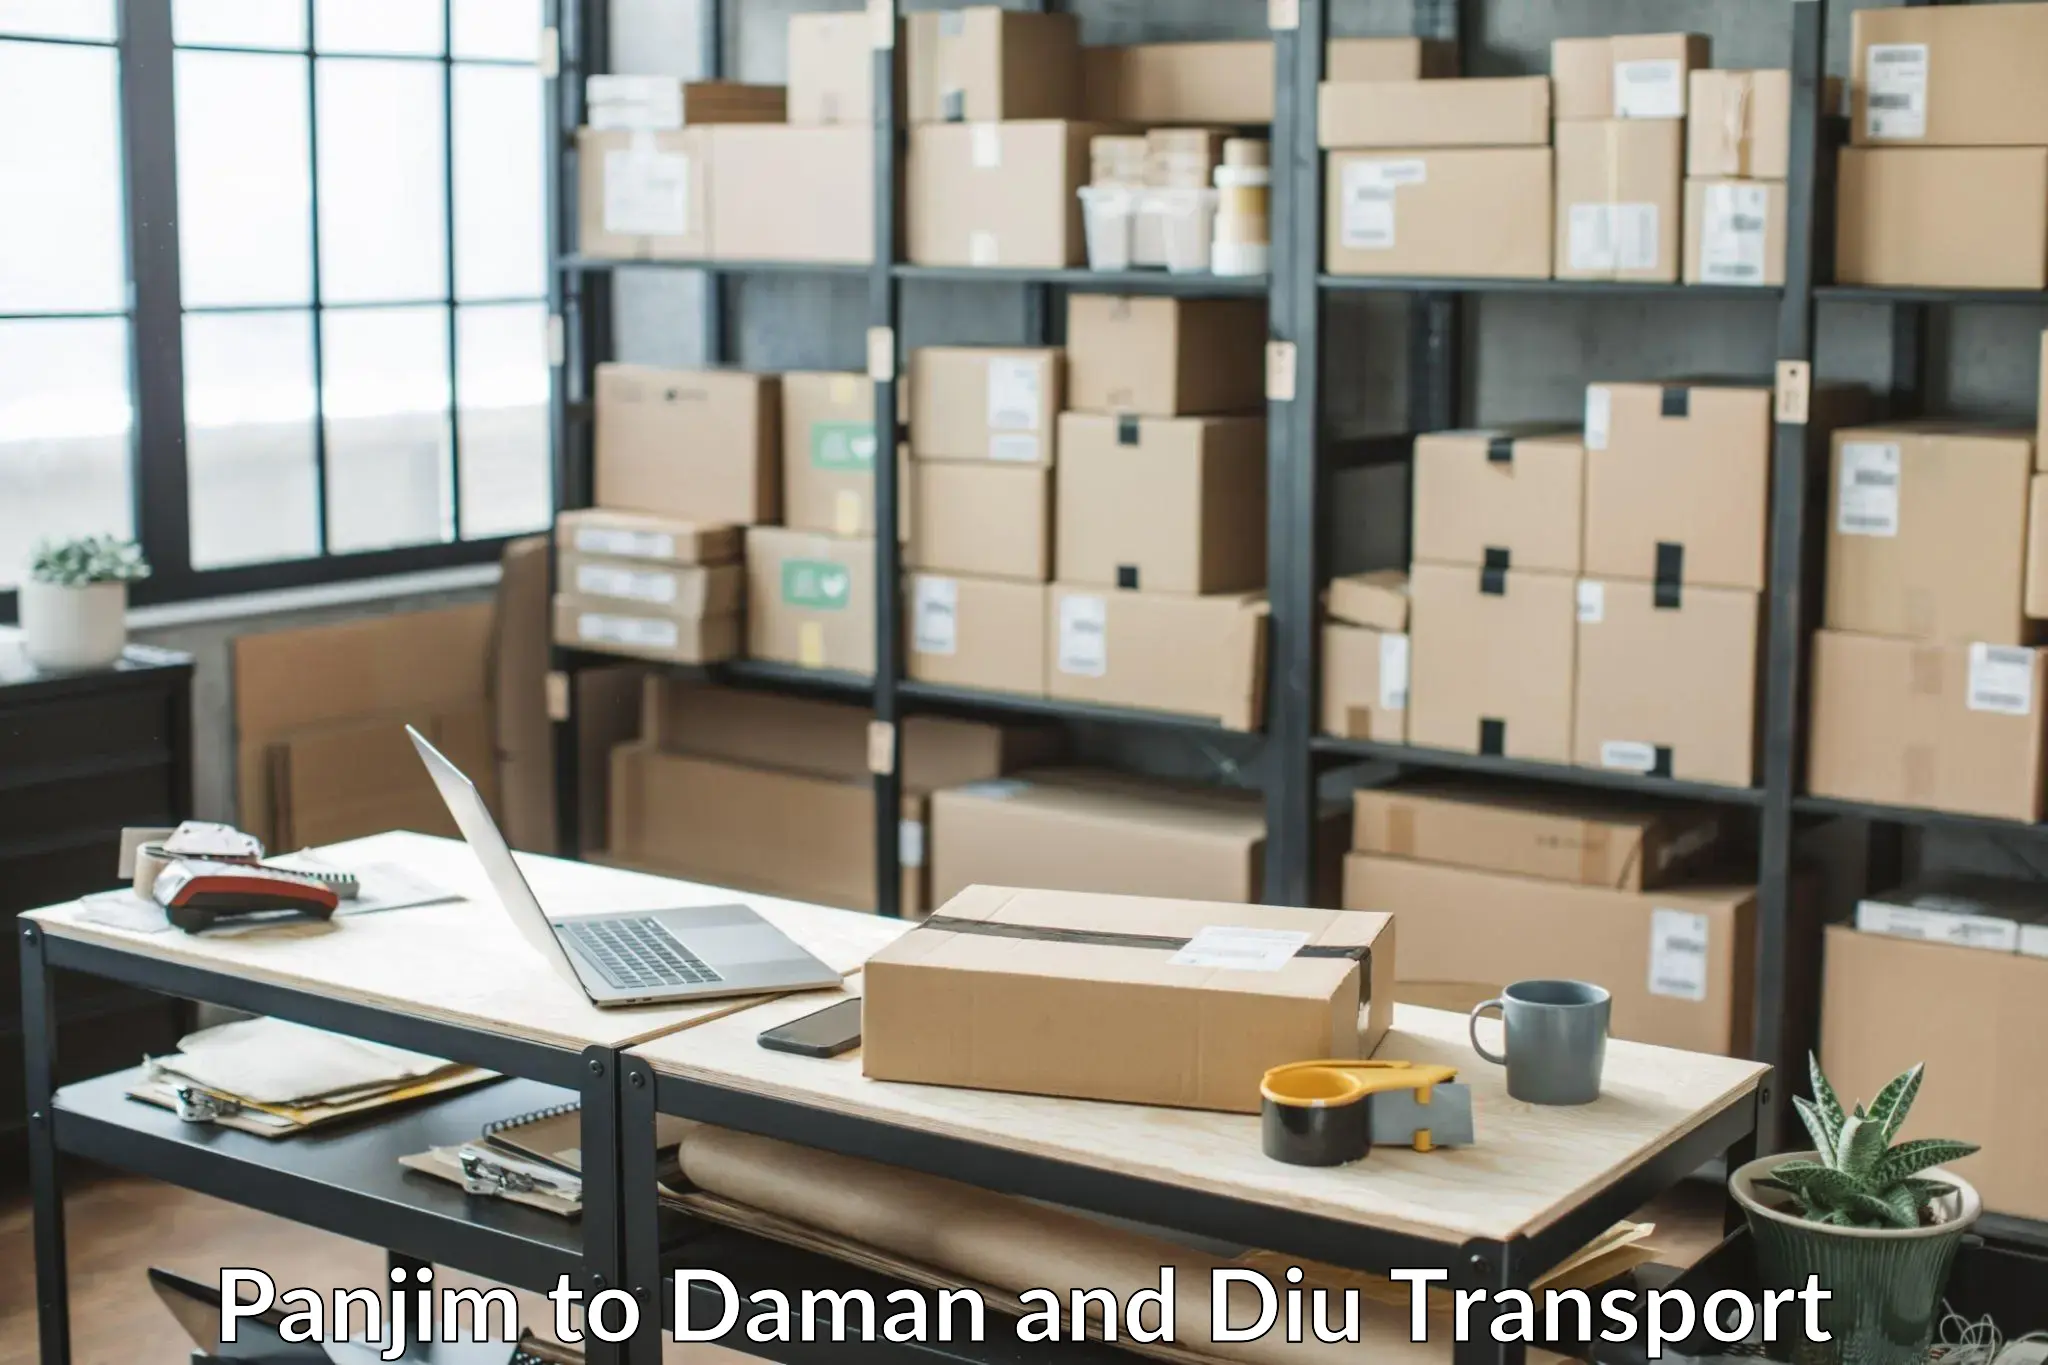 Daily transport service Panjim to Daman and Diu